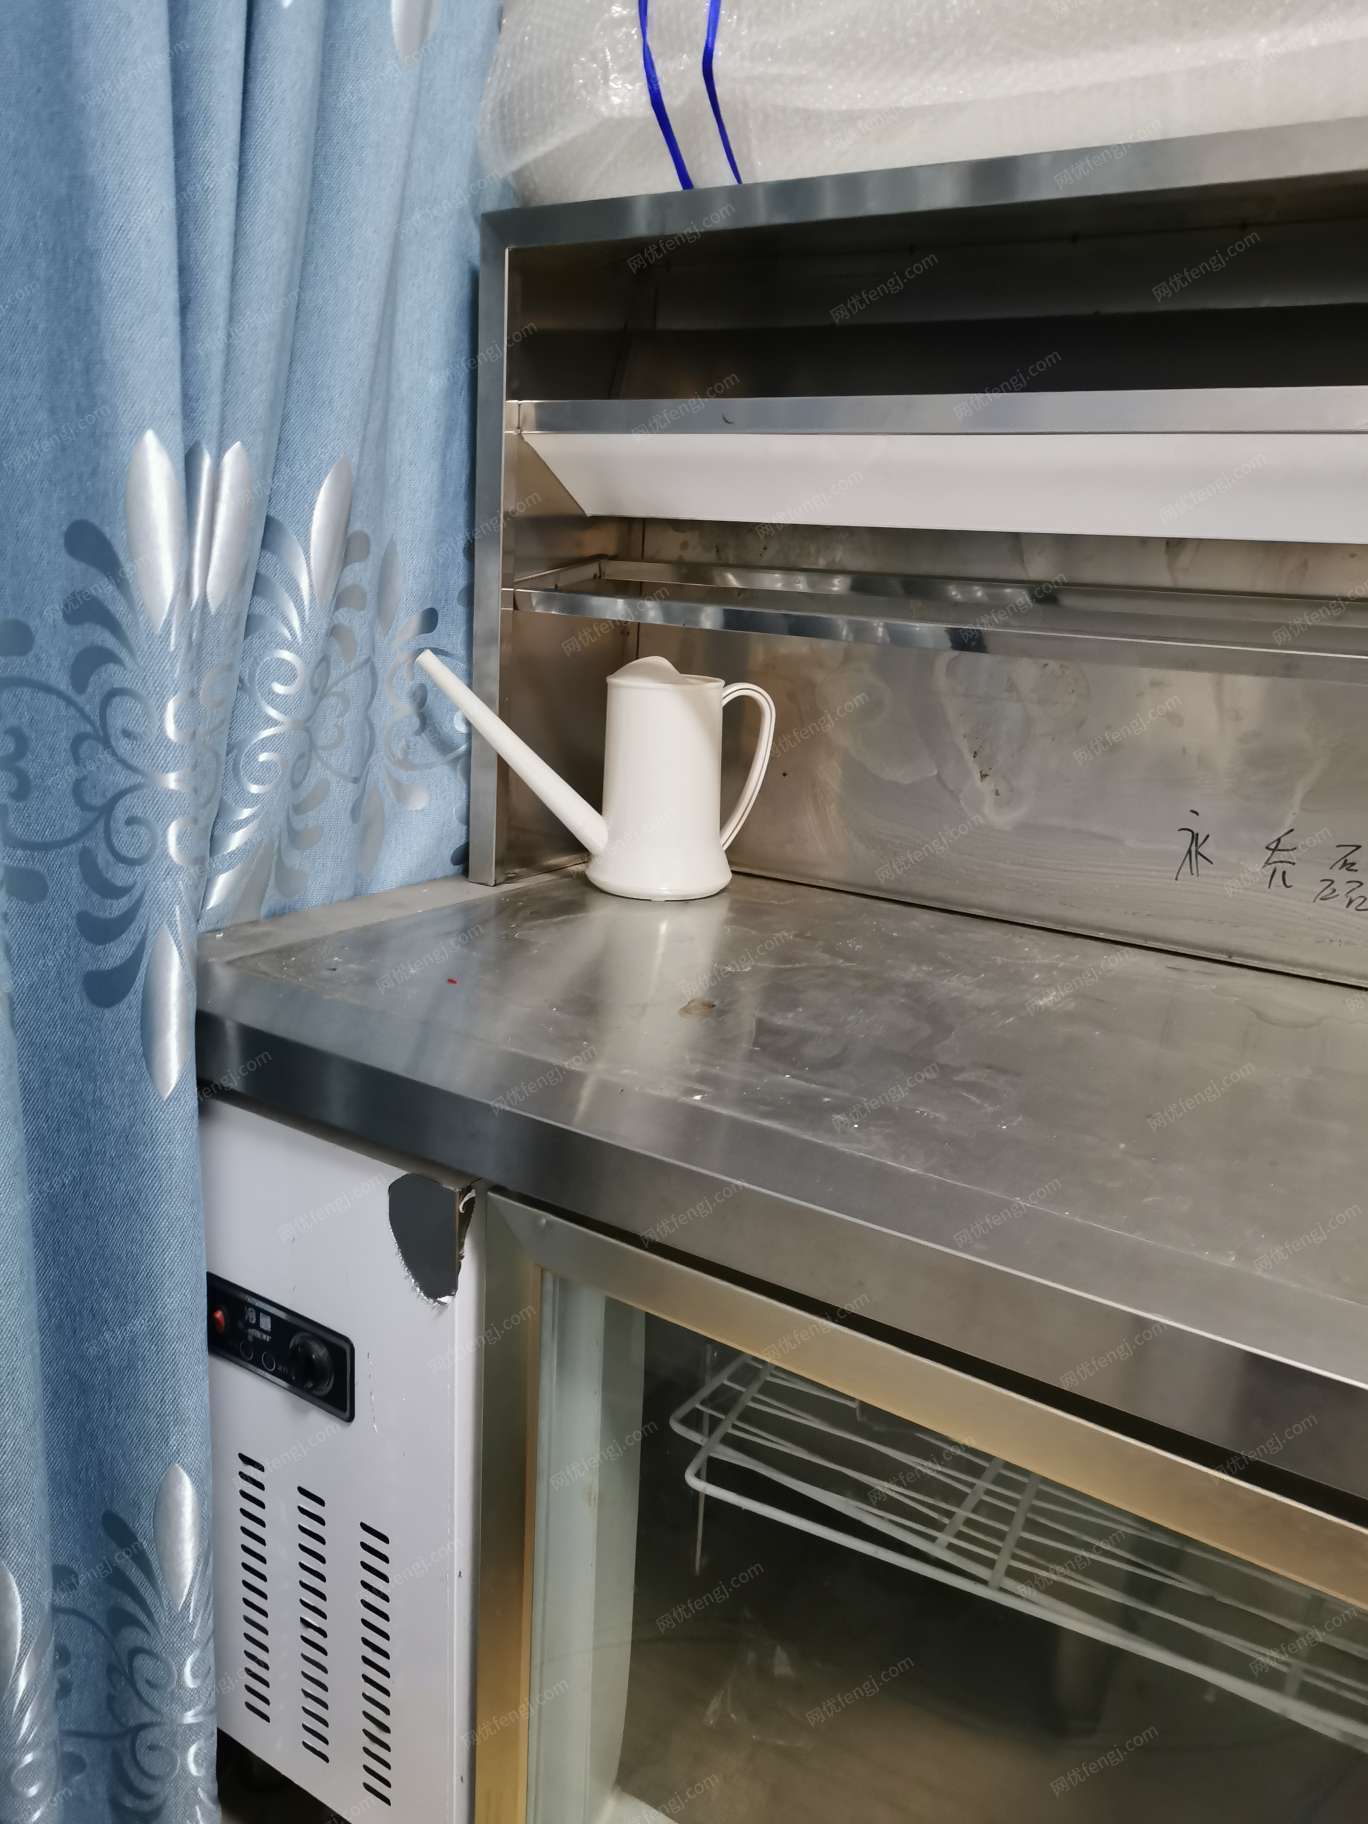 出售奶茶店机器设备一套，制冰机（80公斤）长70㎝，宽70㎝，高79㎝ 洗手台 长100㎝，宽70㎝，高79㎝ 平冷柜 长180㎝，宽70㎝，高79㎝ 茶桶架 长150㎝，高60㎝ 所有台面后背板高8